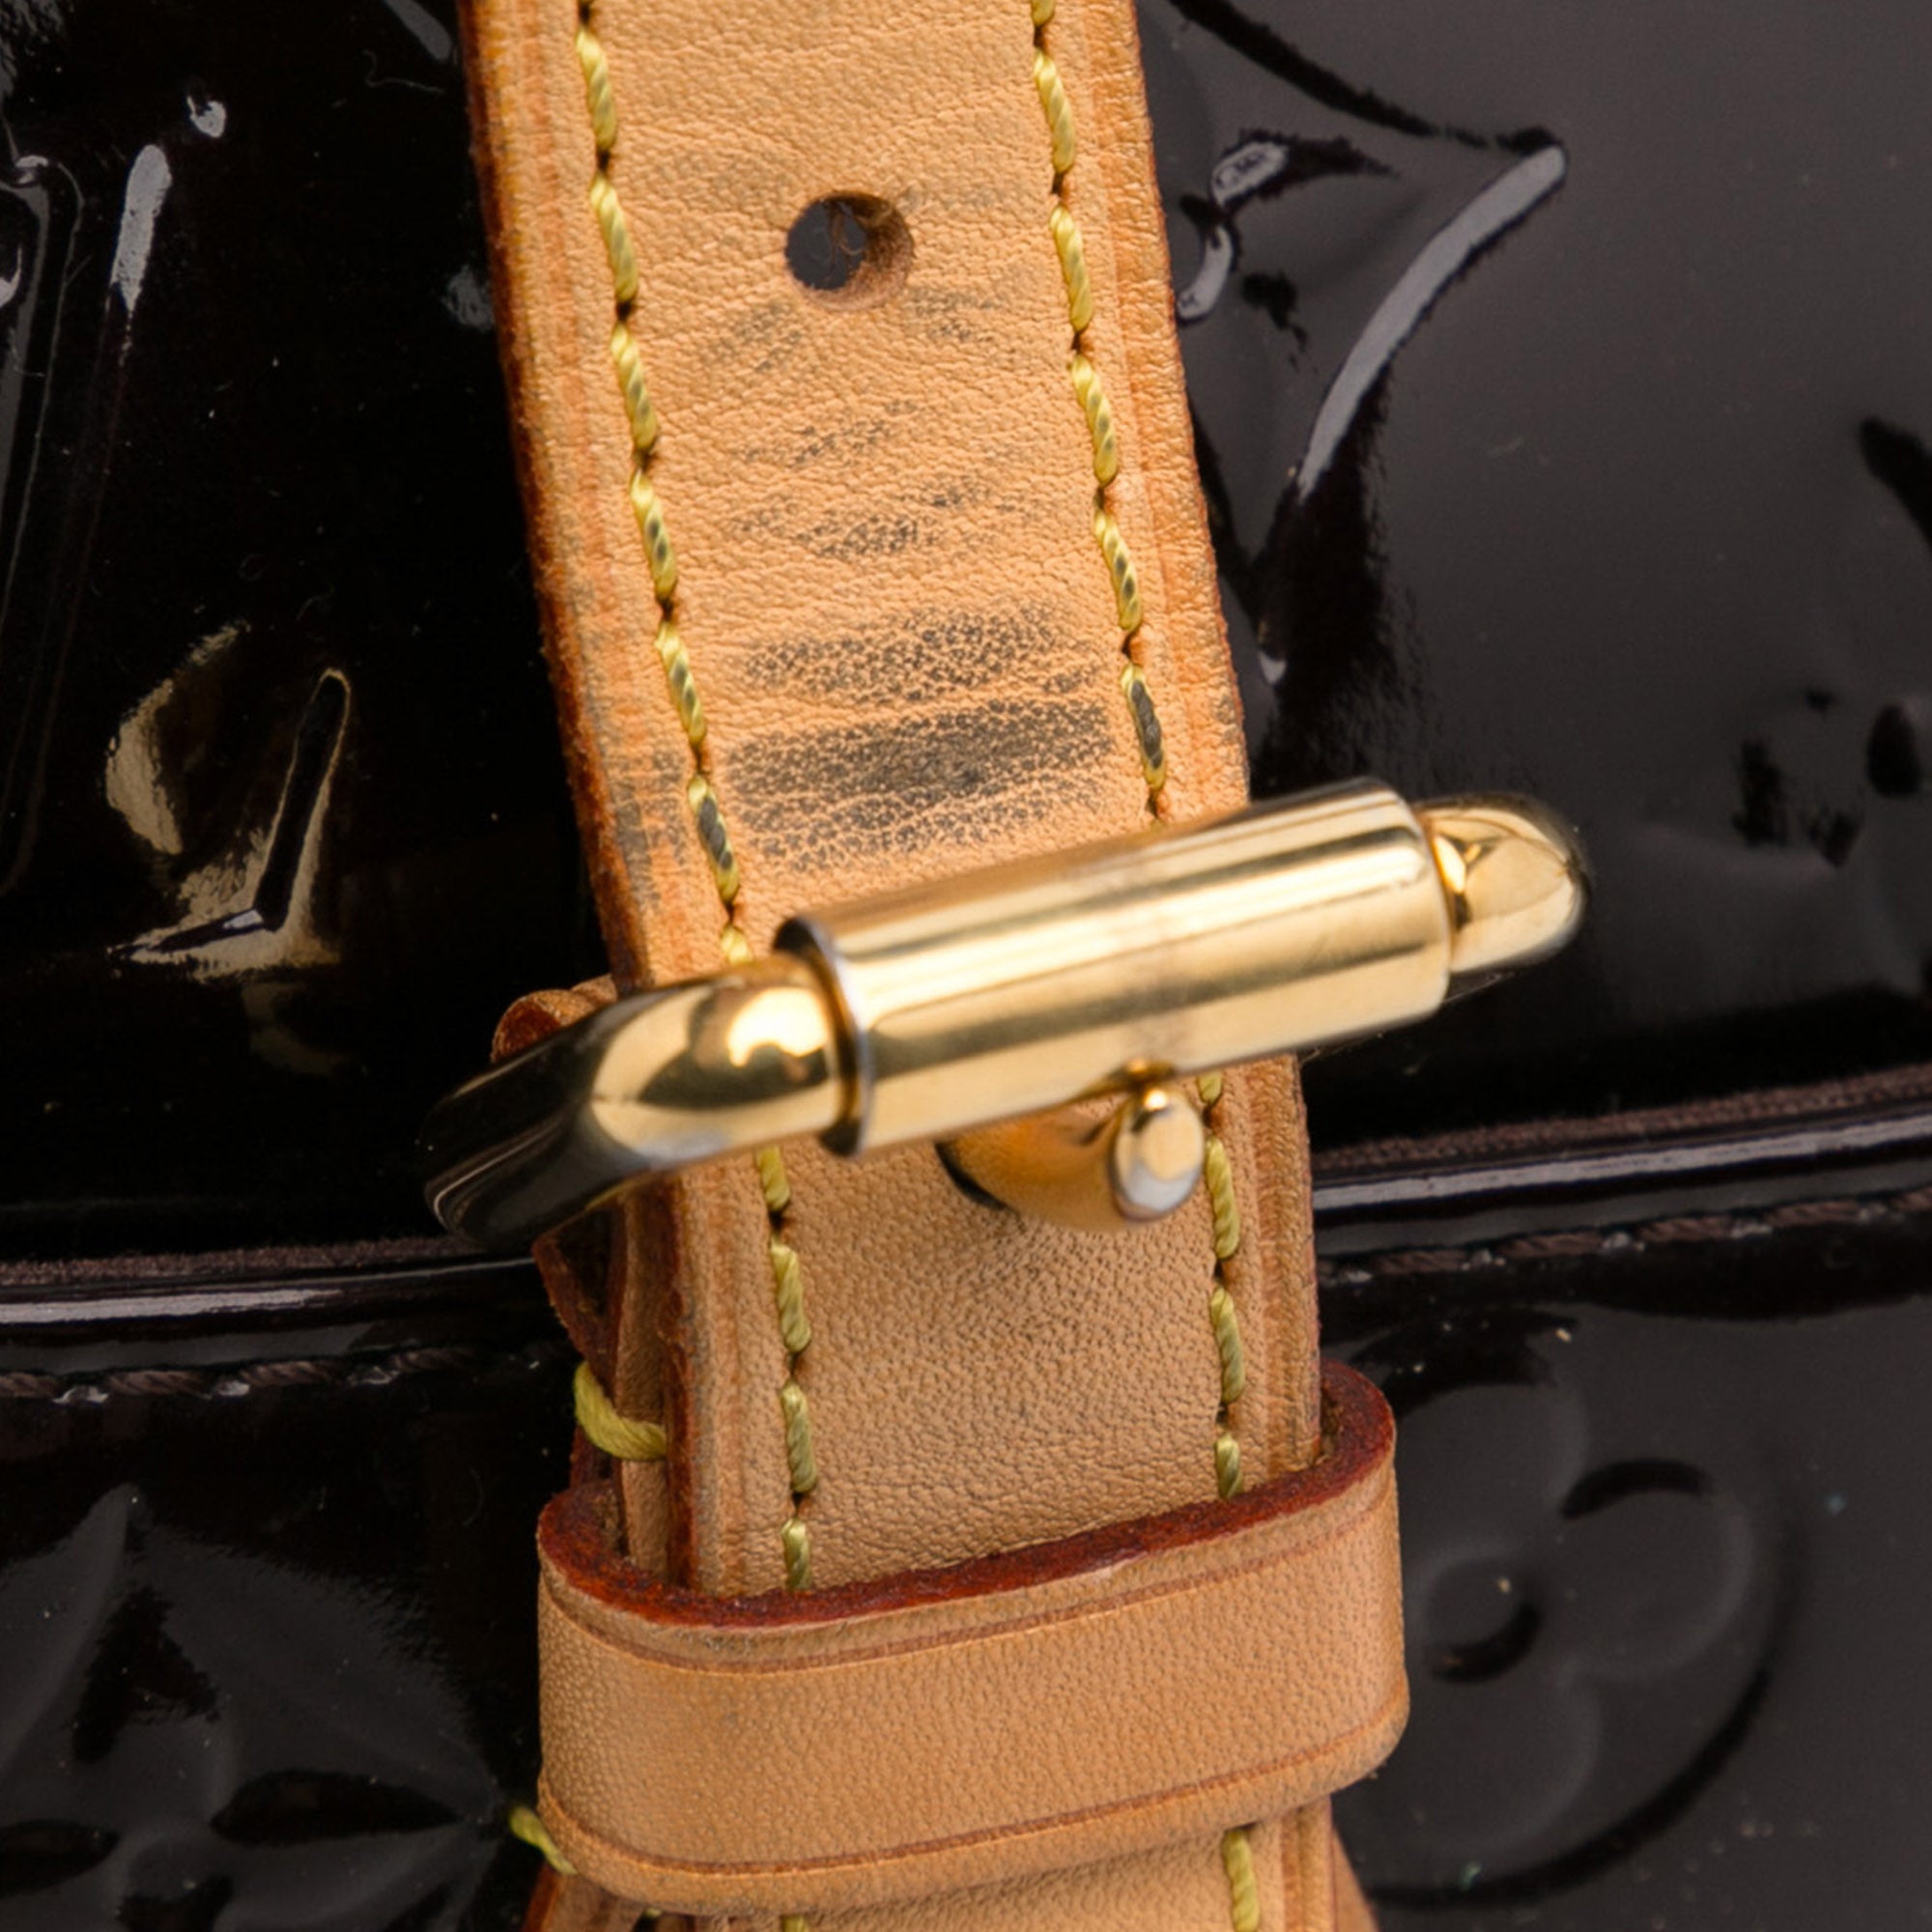 Louis Vuitton Amarante Vernis Monogram Belt